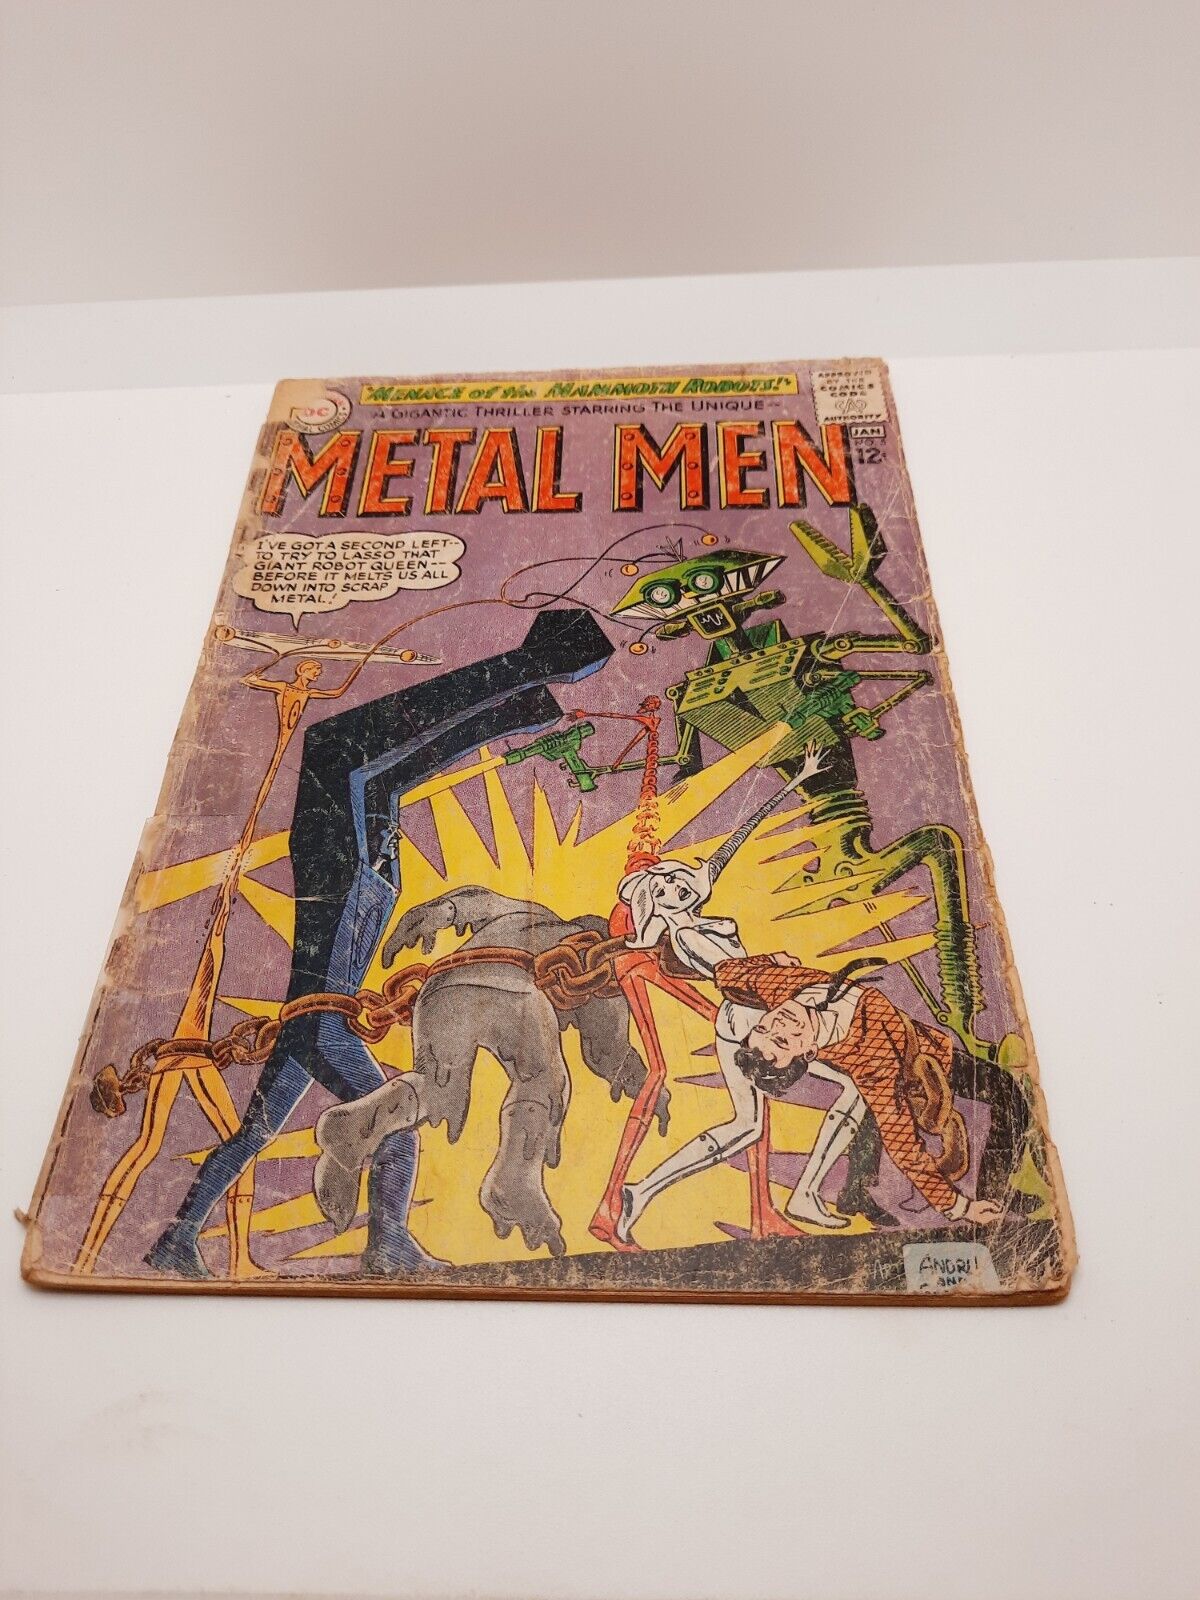 Metal Men #5 DC Comics 1963 Rough Shape Reader Copy